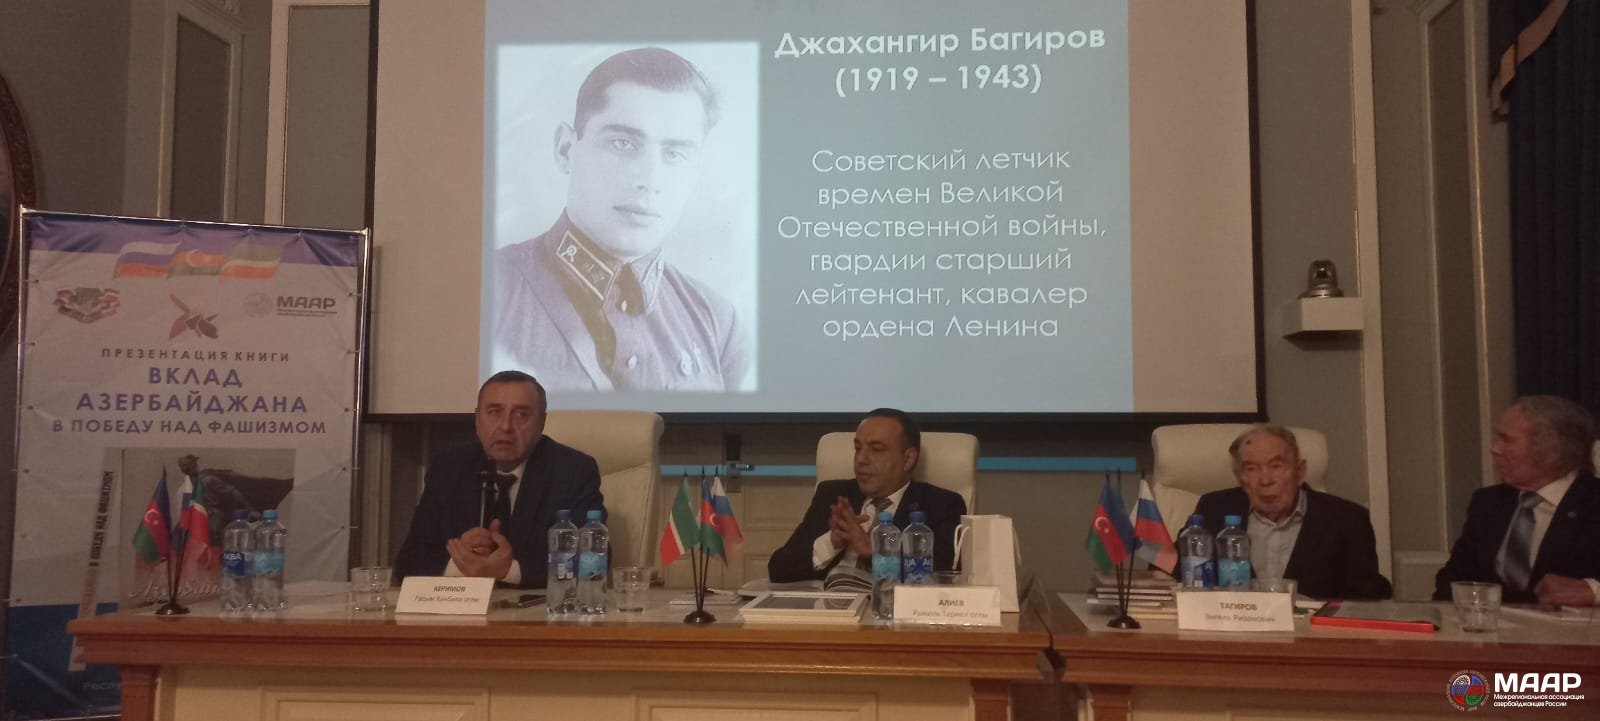 В Казани состоялась презентация книги «Вклад Азербайджана в победу над фашизмом»